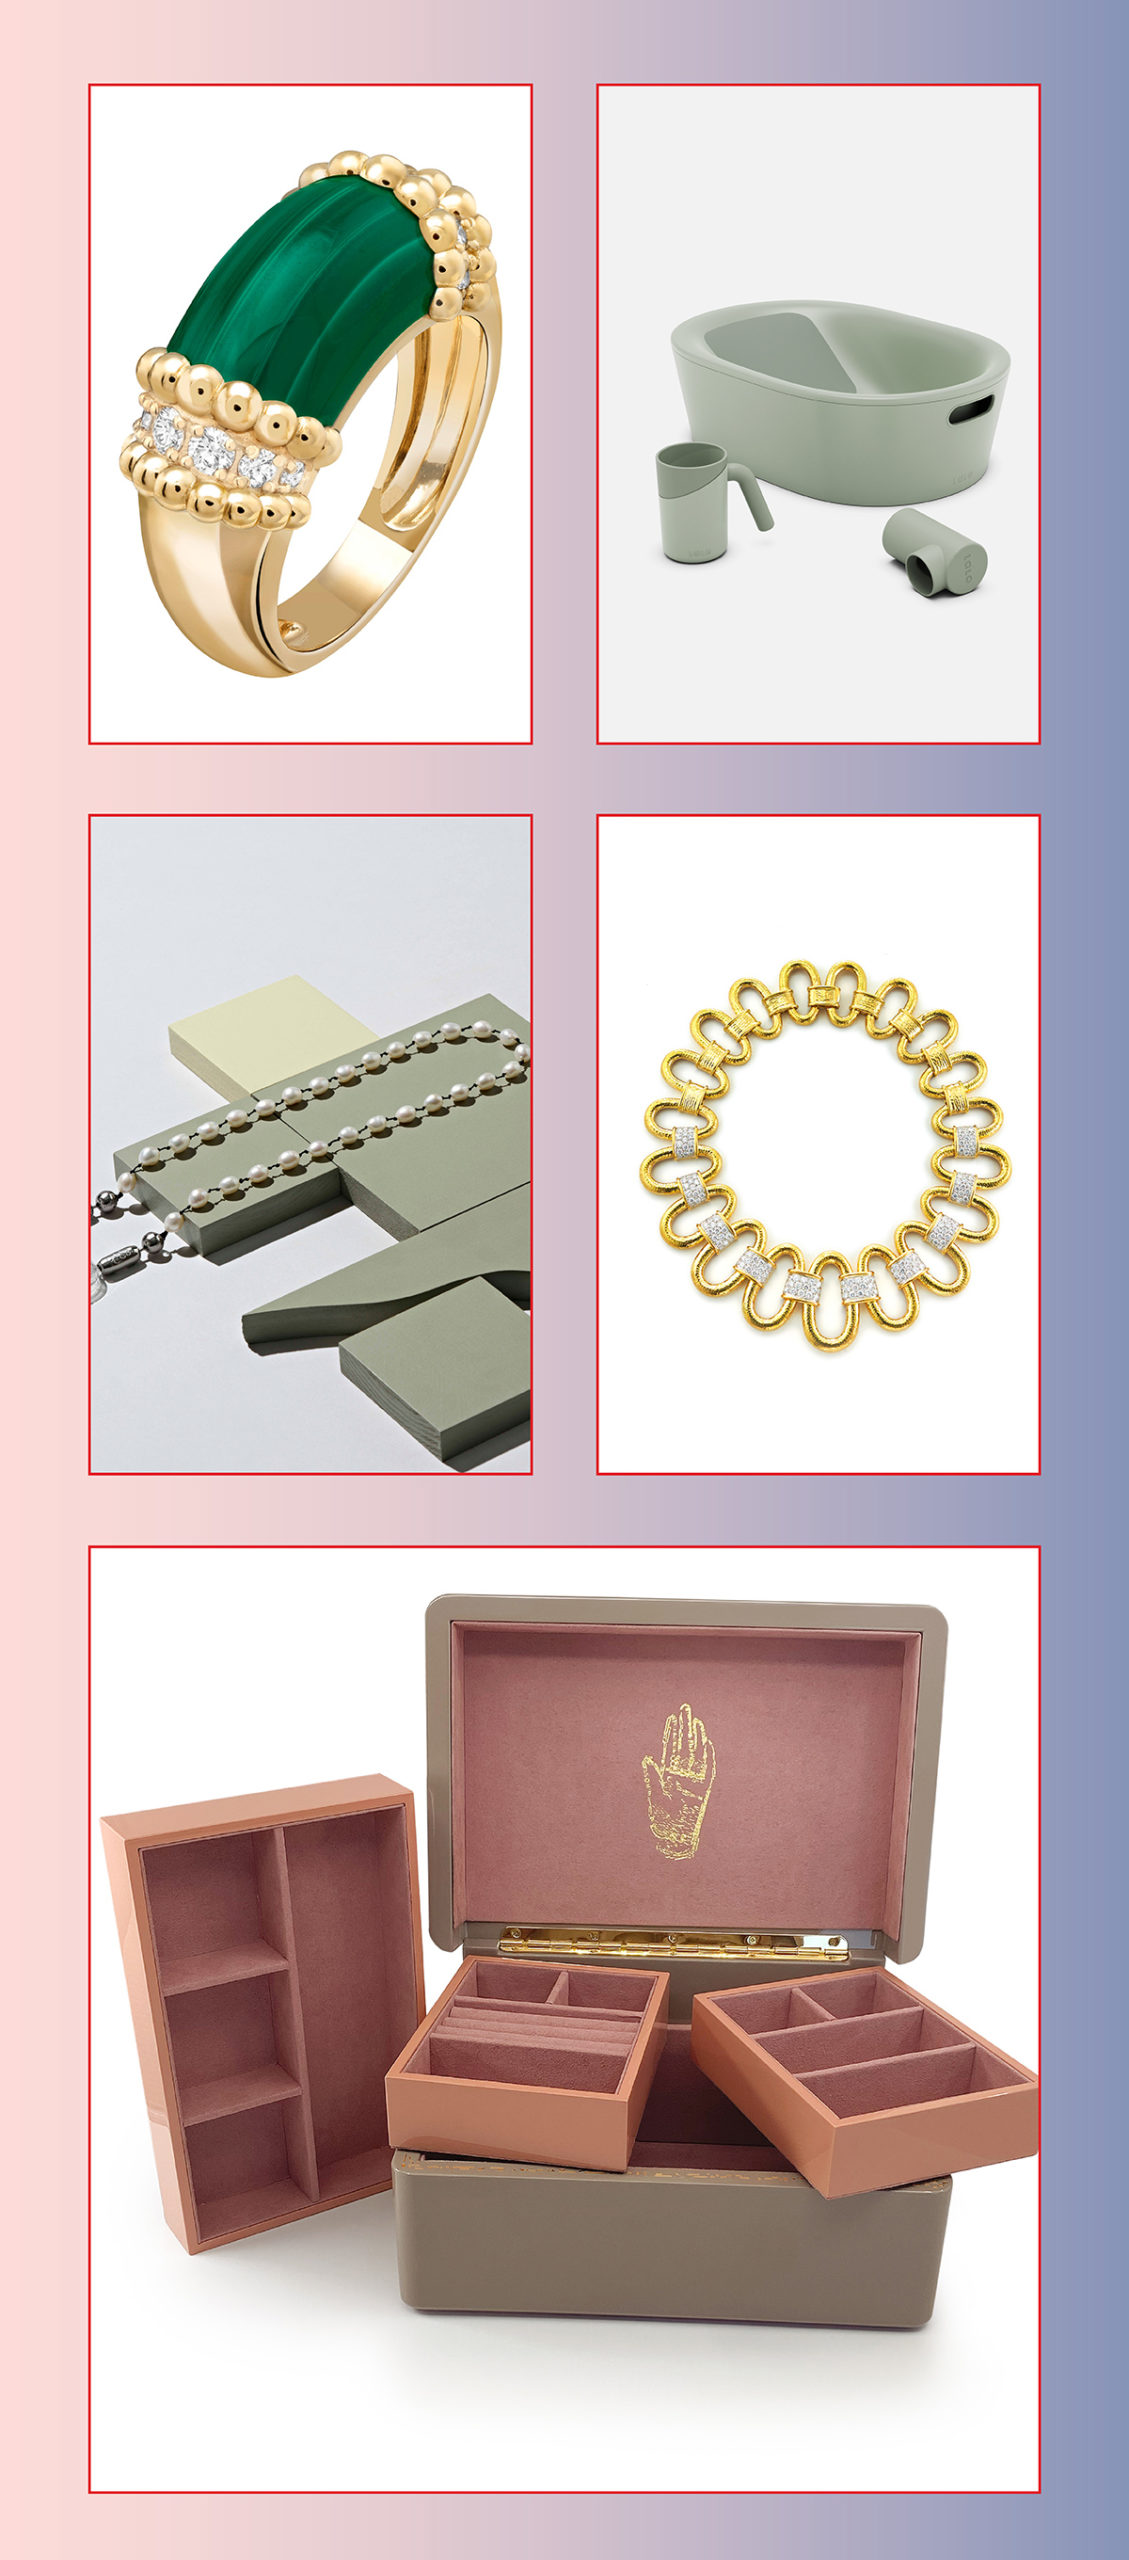 Louis Vuitton Trunks Bags Charm Bracelet - Polyvore  Louis vuitton jewelry,  Charm bracelet, Jewelry stores